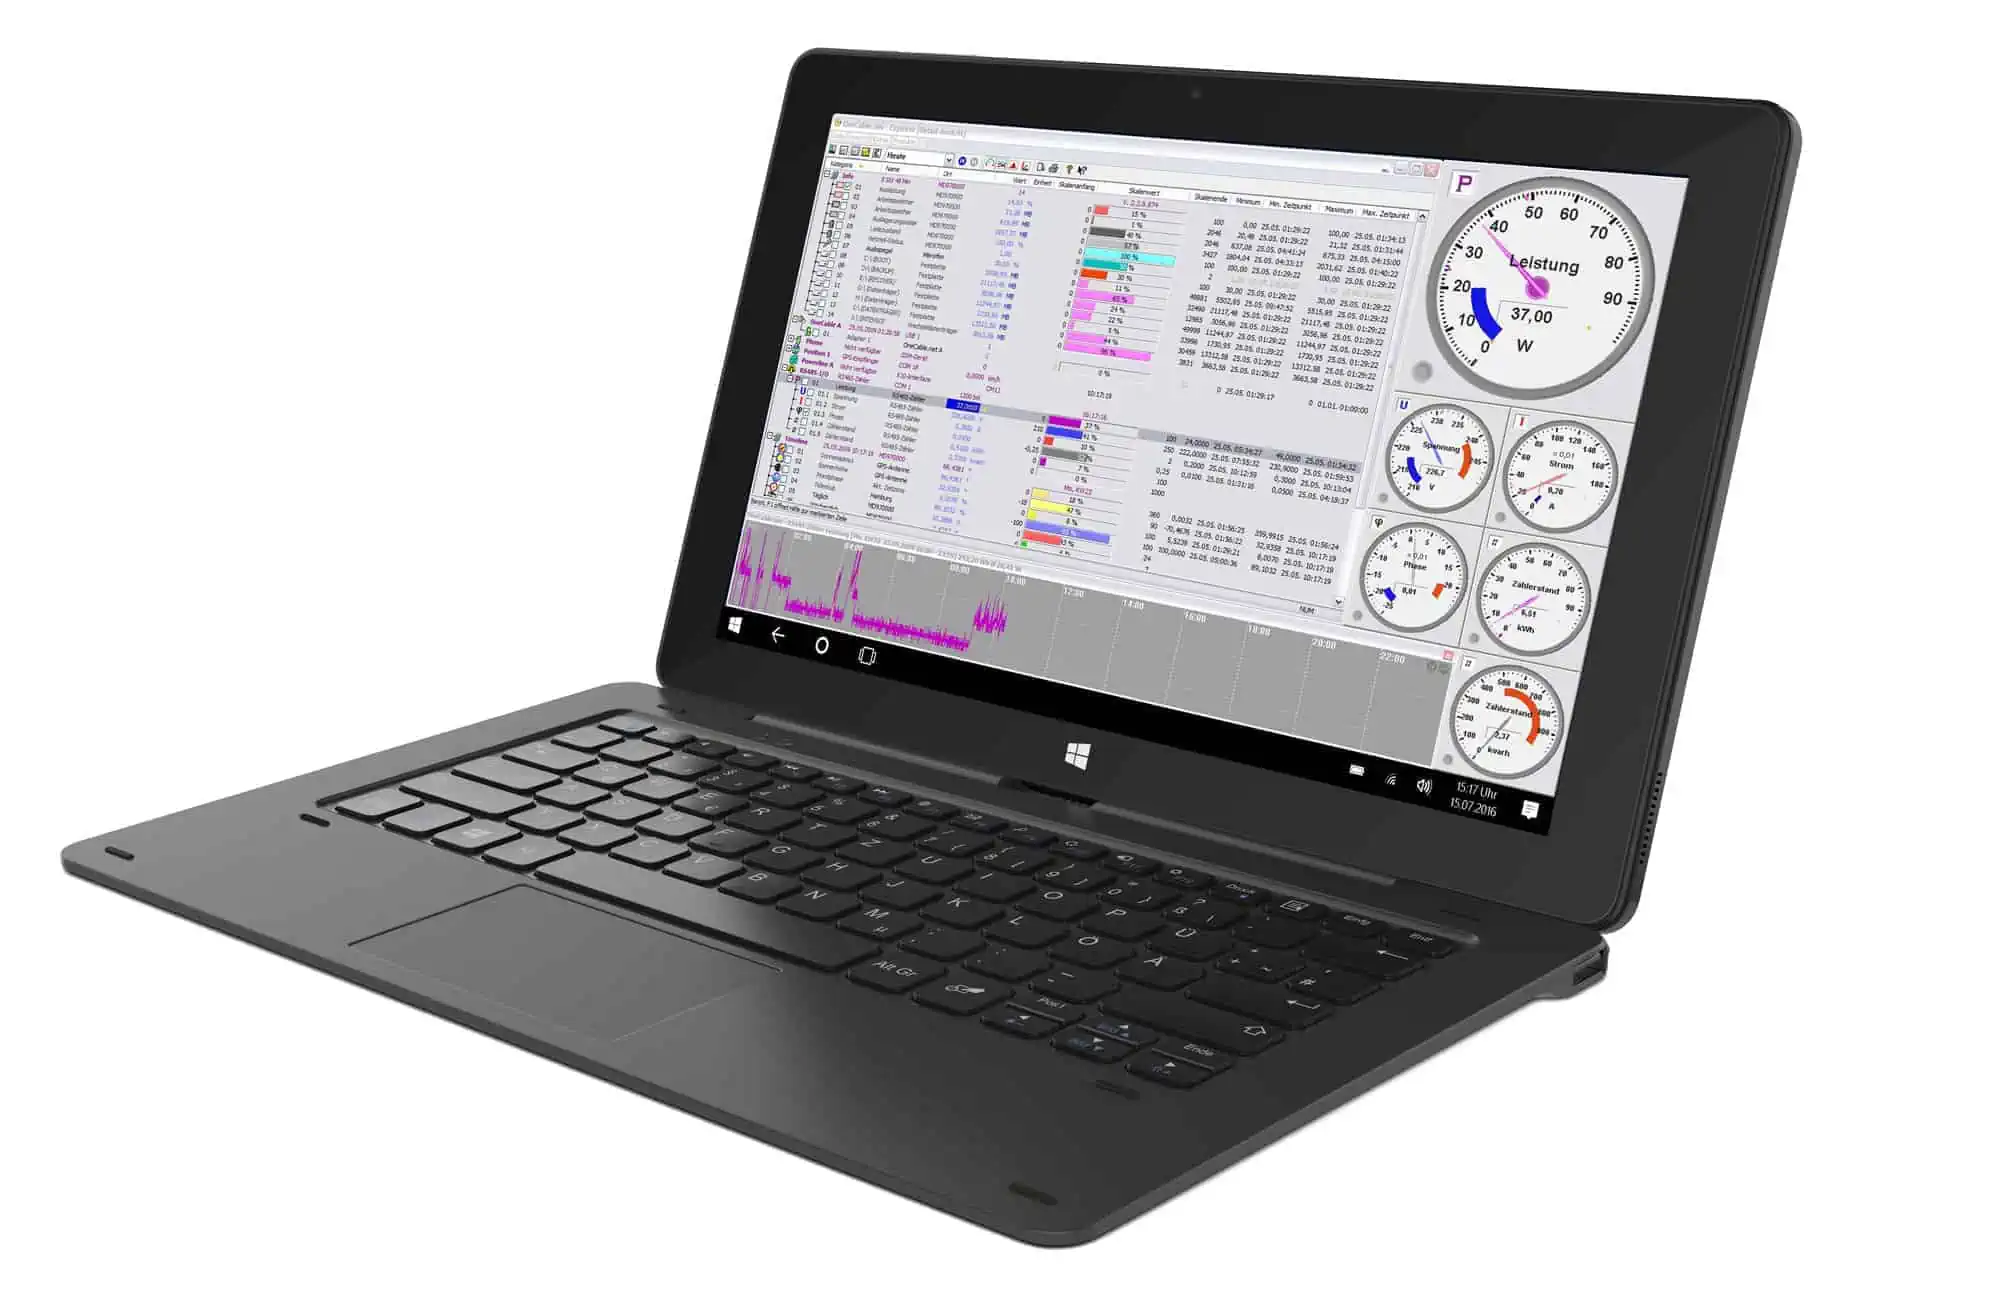 Tablet-PC Messwerterfassung mit dem S0-Recorder per Remote Desktop über LAN oder WLAN von einem Tablet-PC über das Netzwerk